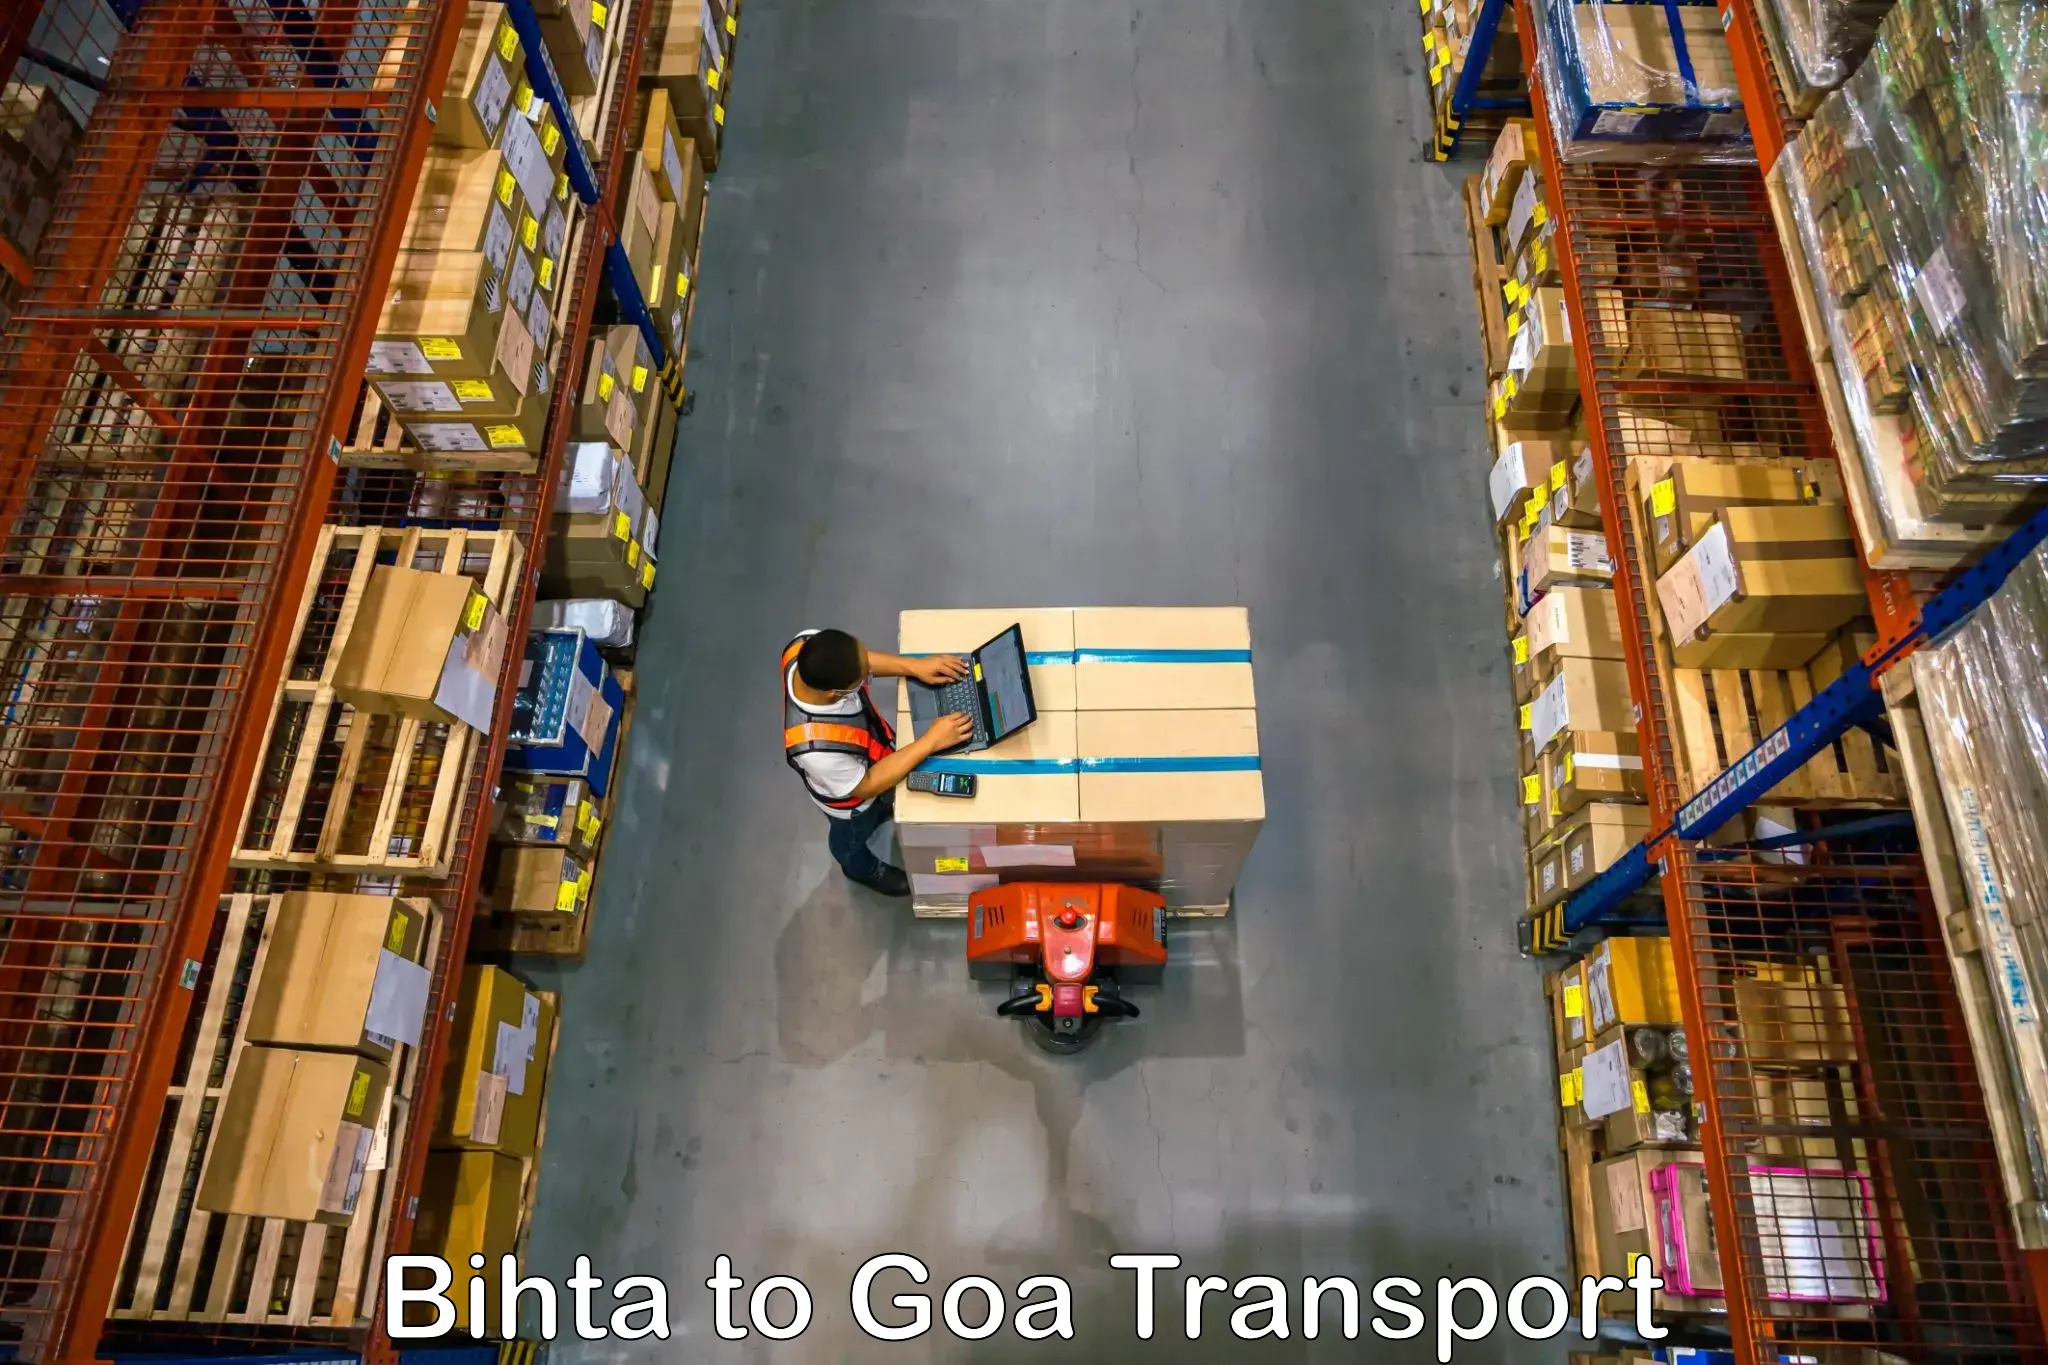 Nearest transport service Bihta to Mormugao Port